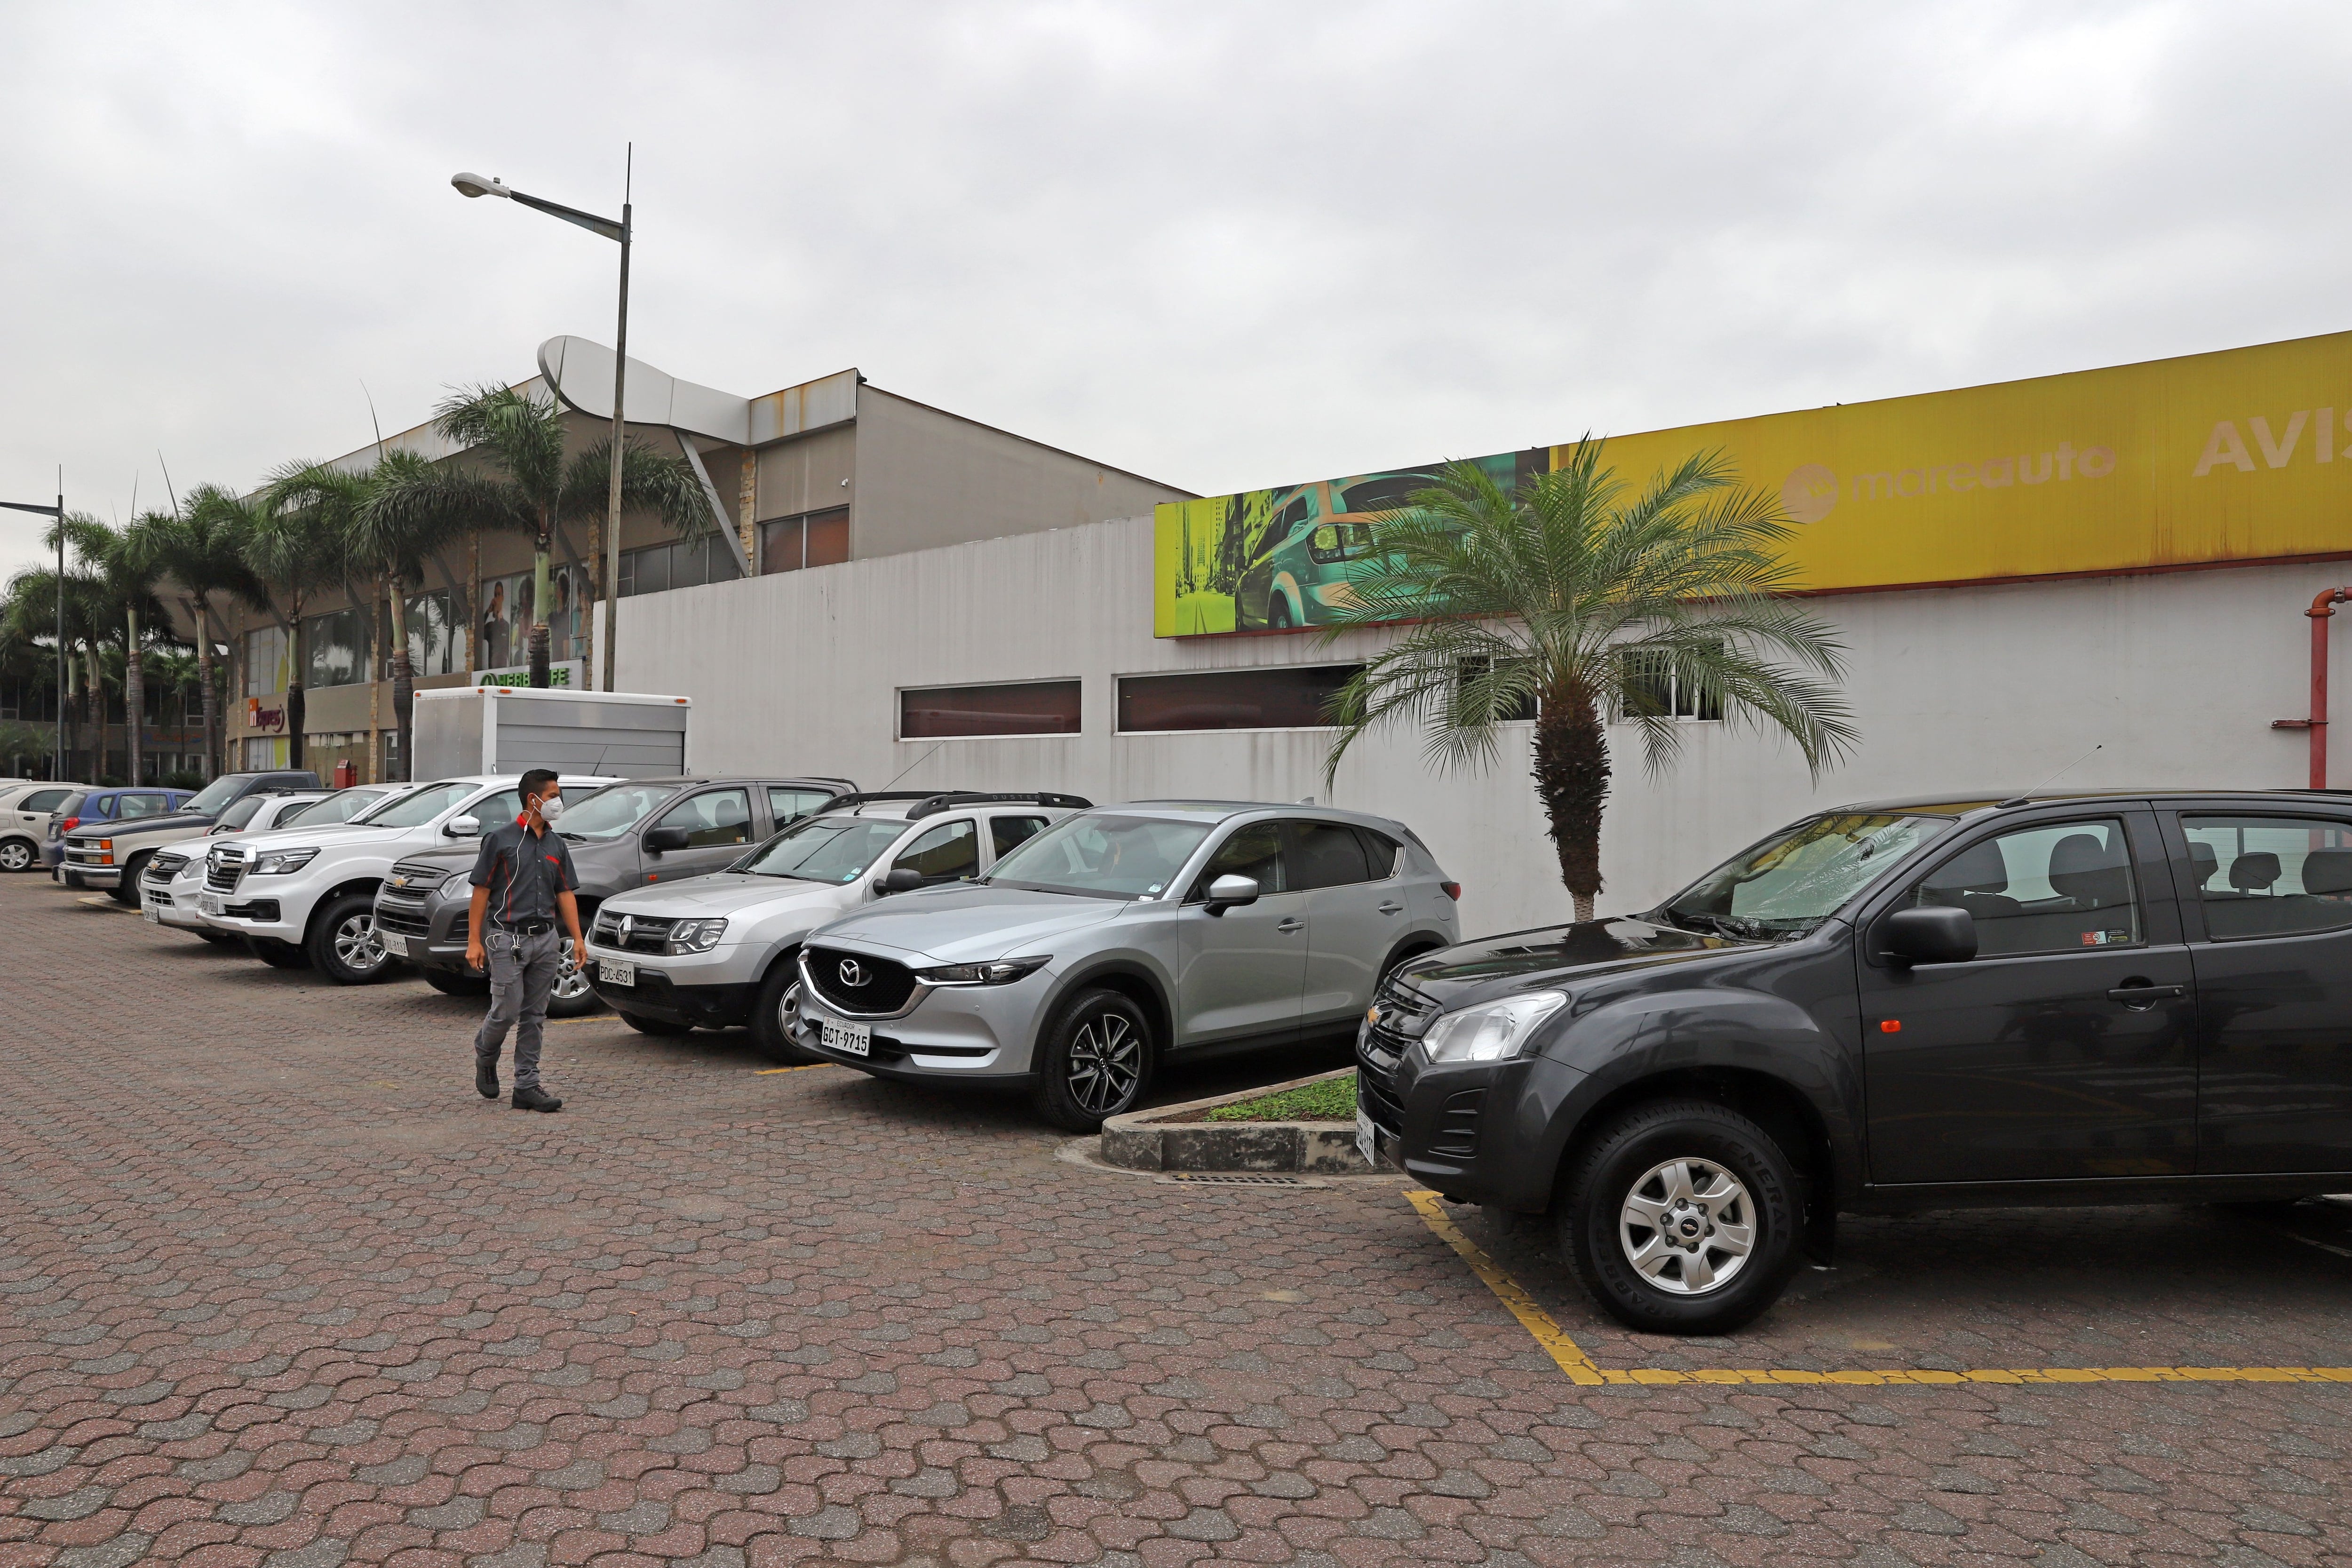 Más de 400 empresas en Ecuador recurren al renting para usar flotas en sus operaciones